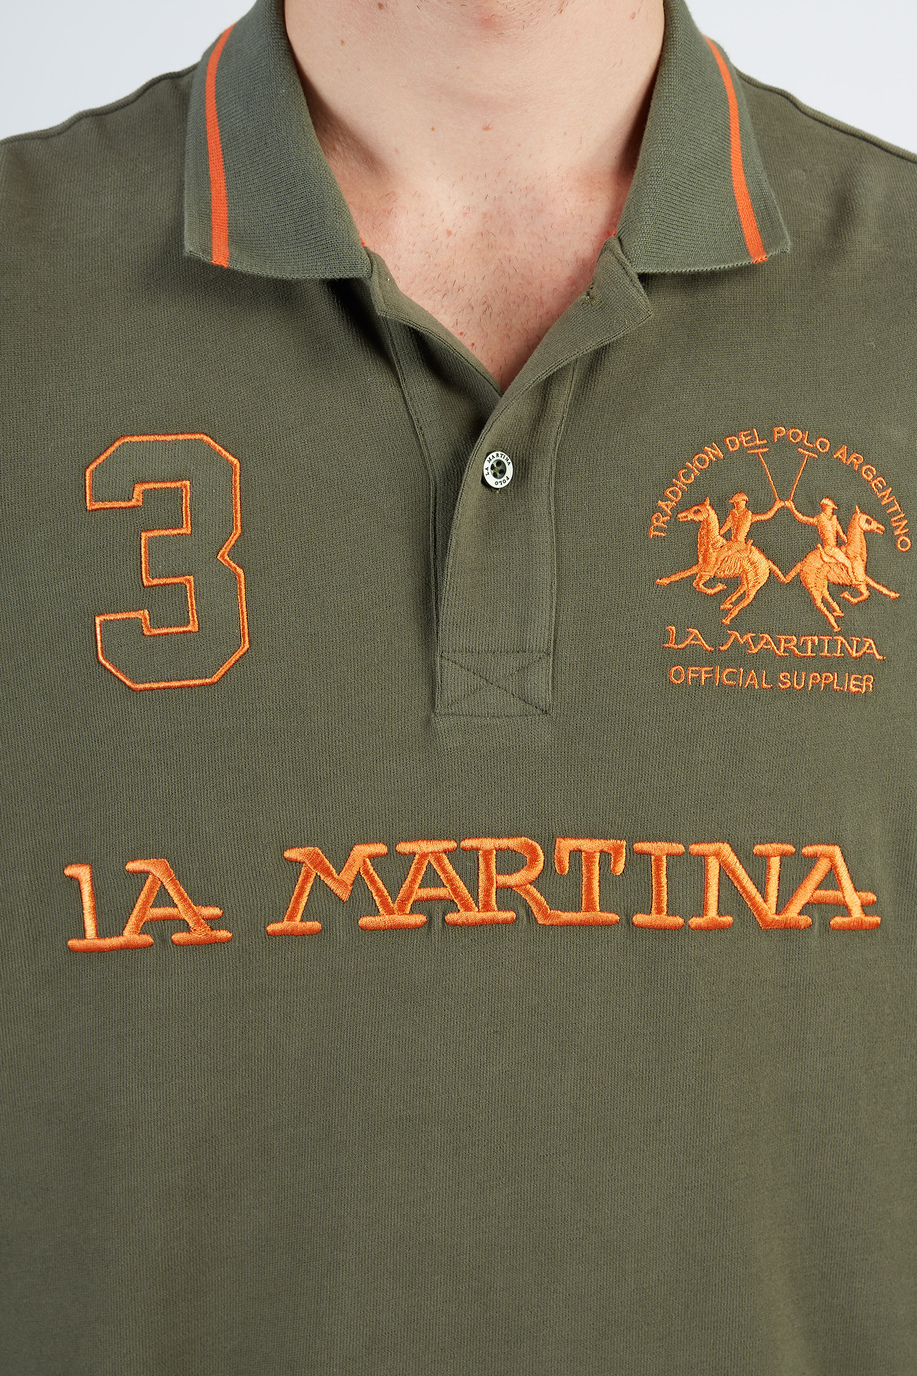 Herren-Poloshirt aus Baumwolle mit langen Ärmeln - Clubhaus-Outfits | La Martina - Official Online Shop